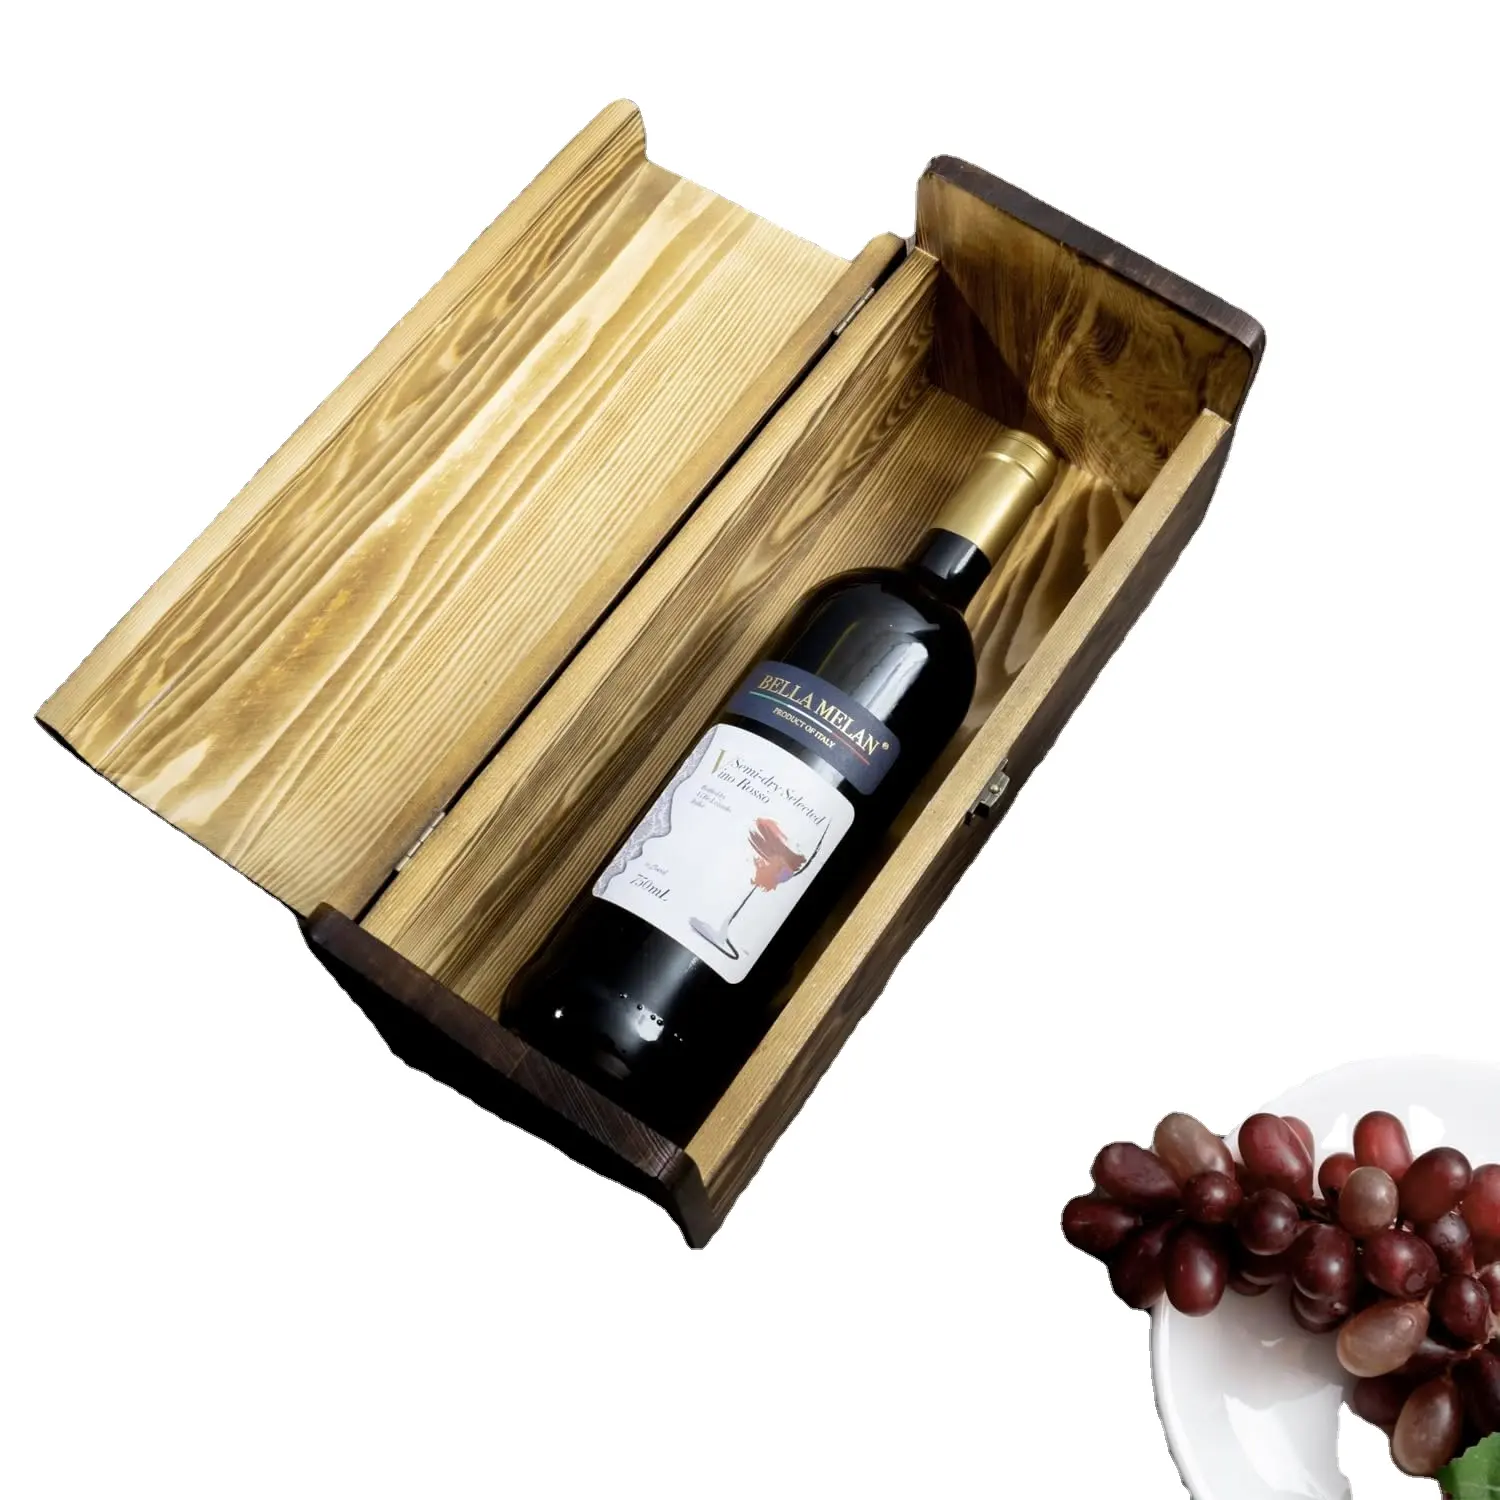 बांस की लकड़ी वाइन बॉक्स पैकेजिंग और सिंगल बोतल वाइन 1.5 लीटर बॉक्स के साथ लकड़ी जली हुई गहरे भूरे रंग की सिंगल वाइन बोतल होल्डर बॉक्स